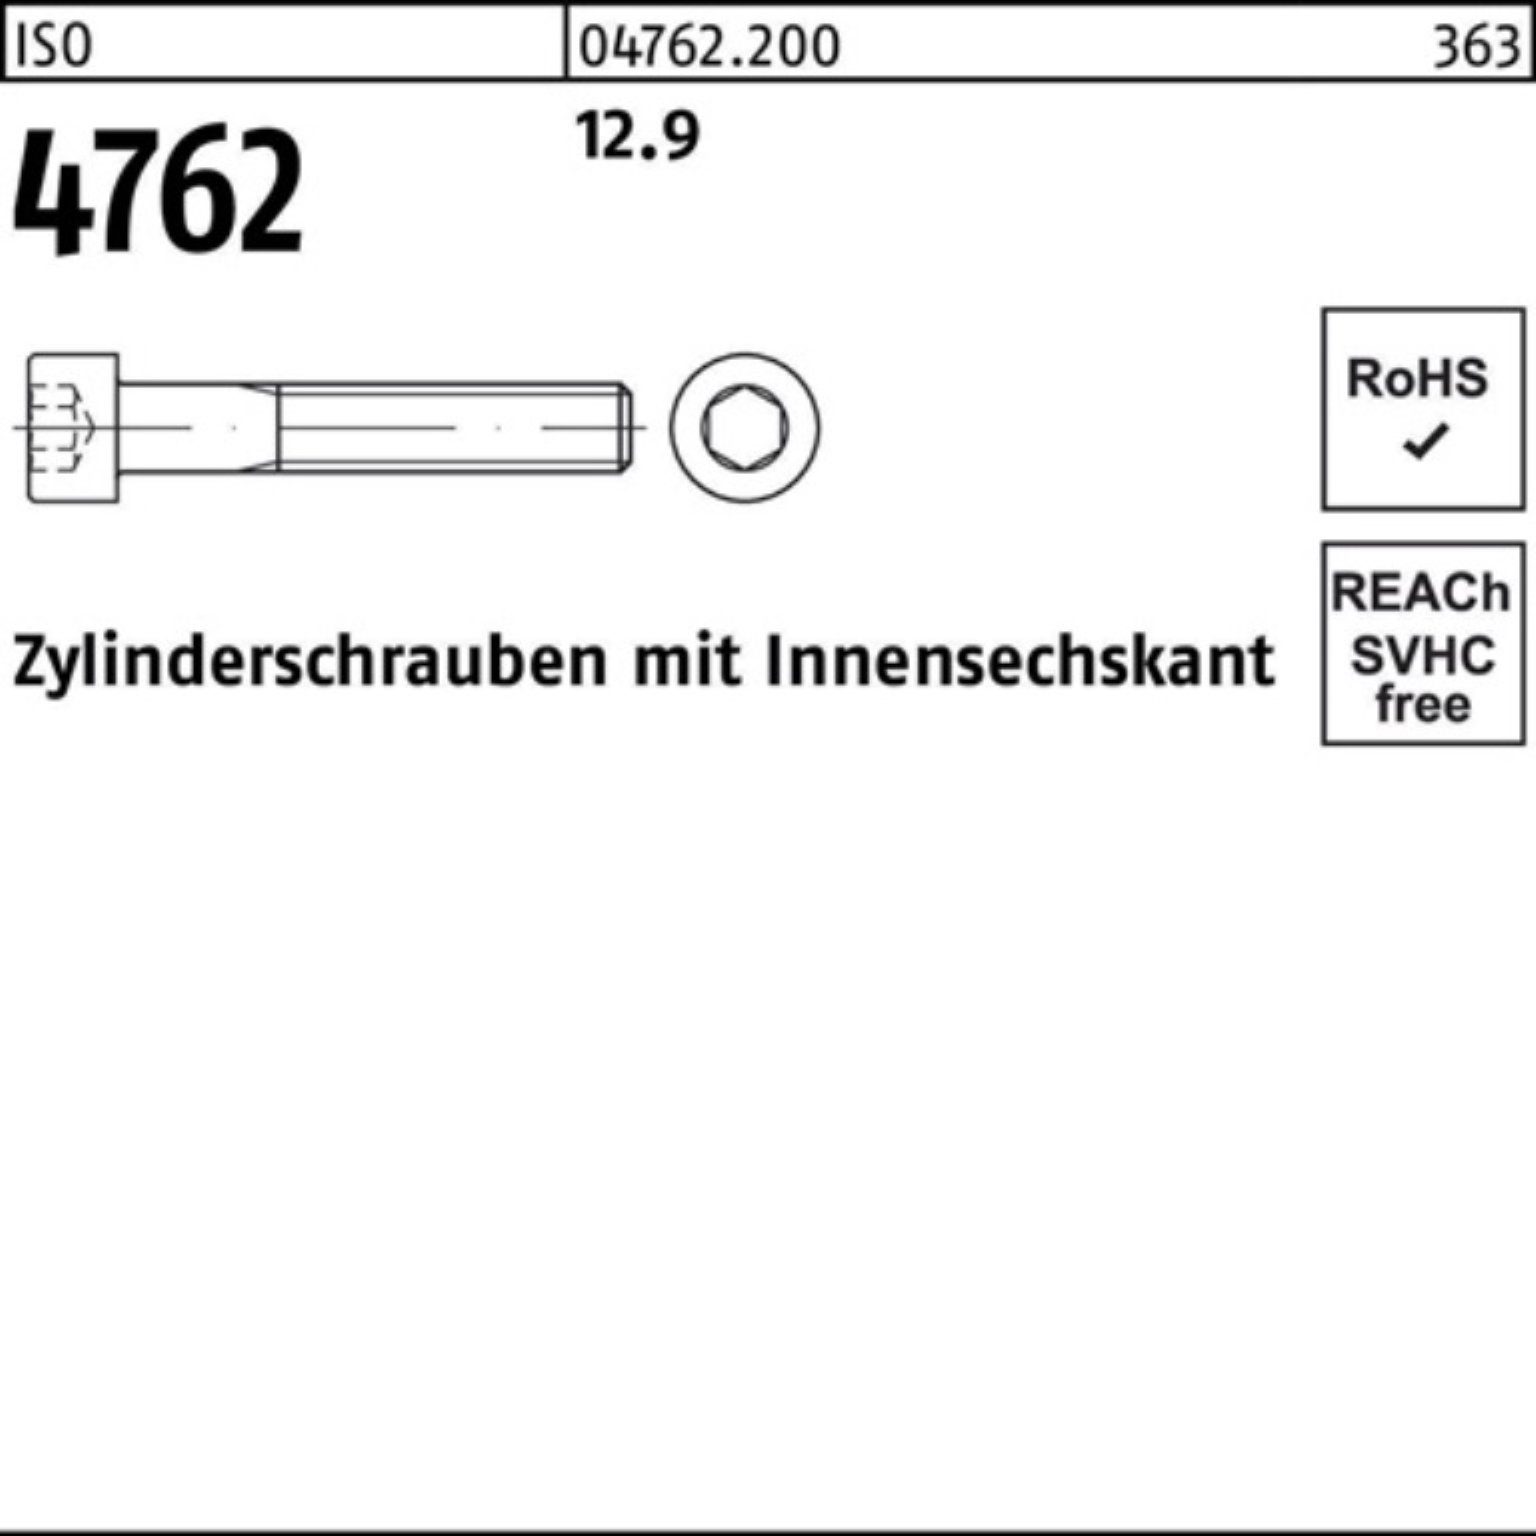 M39x Pack Zylinderschraube 12.9 ISO Stück Reyher 170 Innen-6kt Zylinderschraube 1 4762 100er